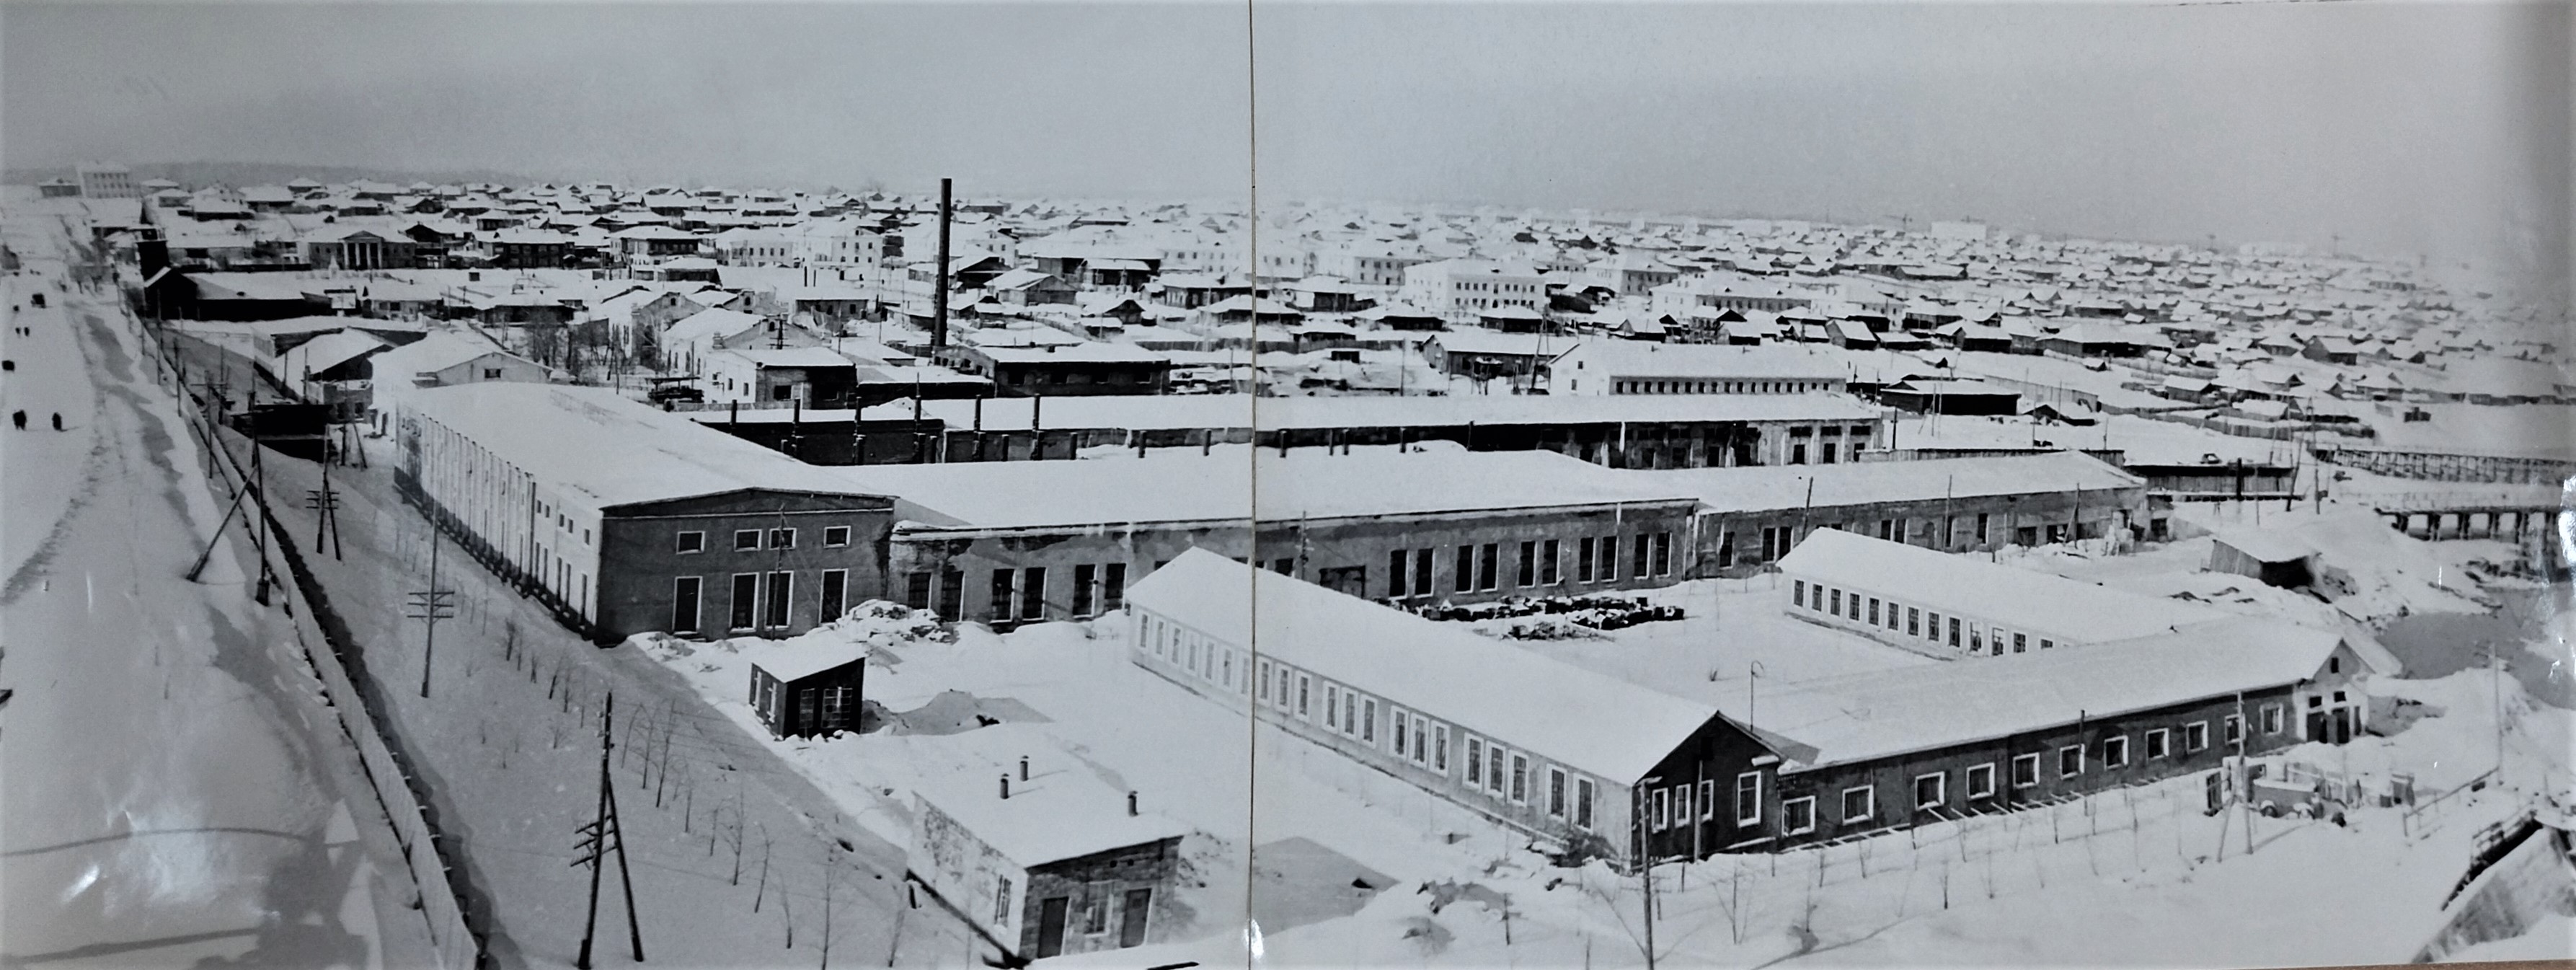 Общий вид электроаппаратного завода и старой части города со стороны горы Шайтан. Декабрь 1961 года 